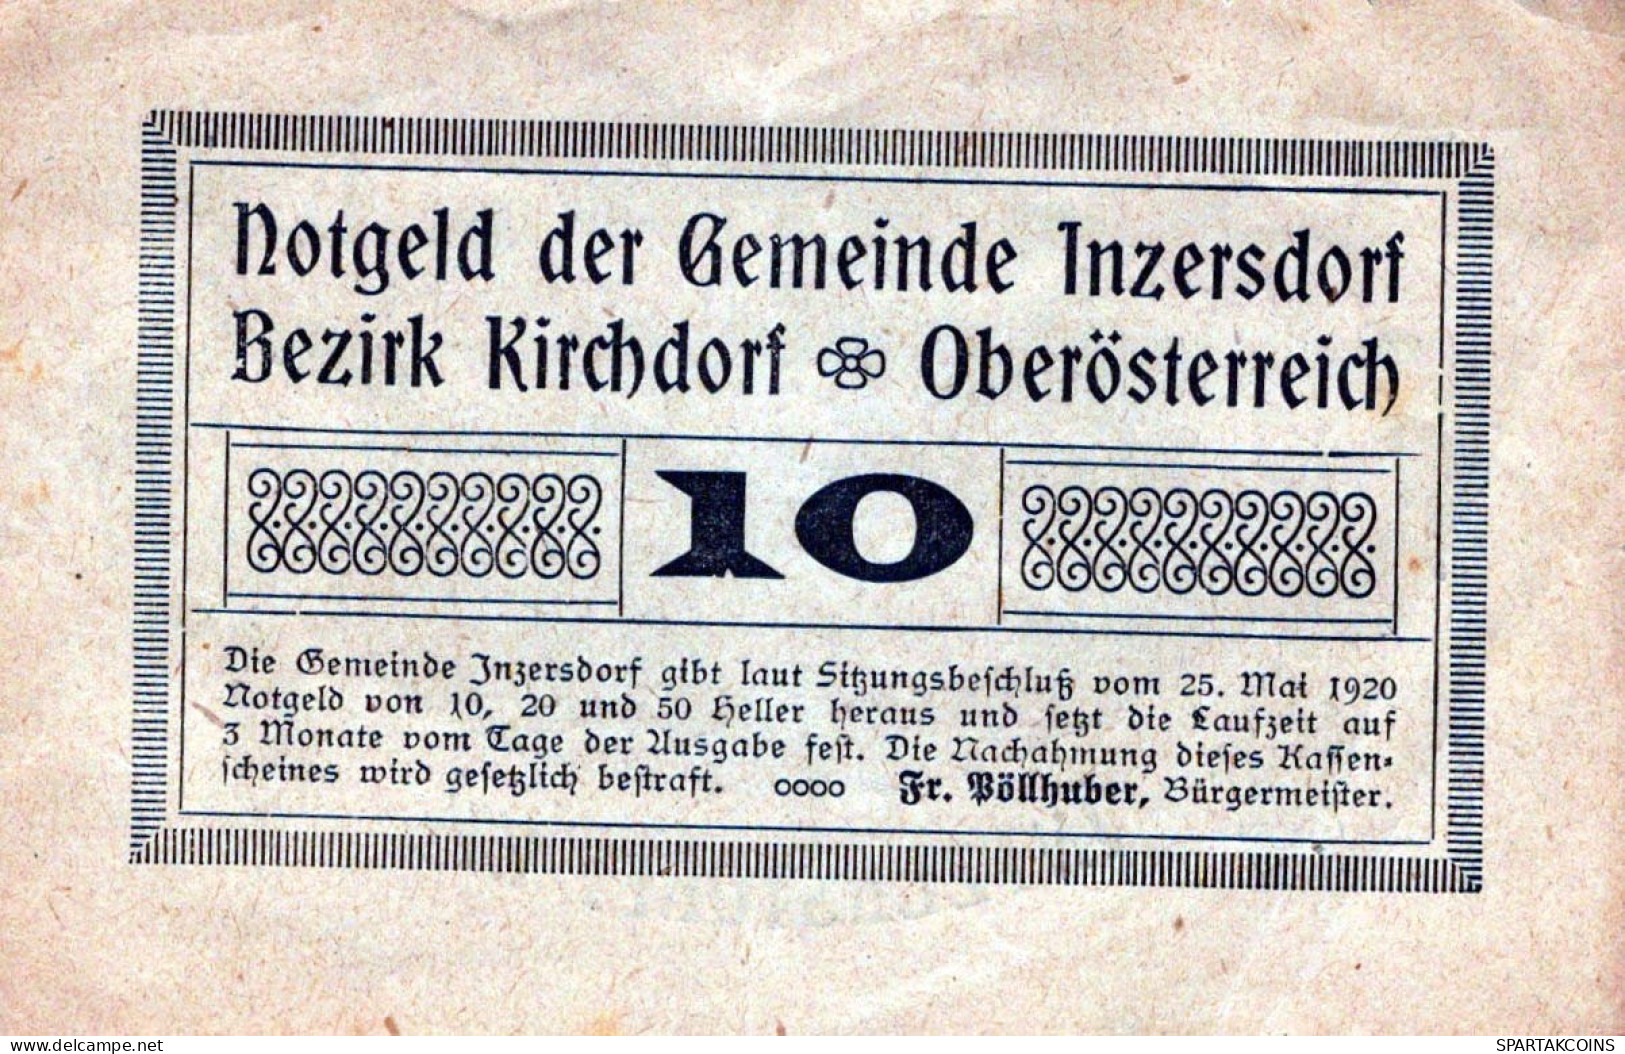 10 HELLER 1920 Stadt INZERSDORF Oberösterreich Österreich Notgeld Papiergeld Banknote #PG882 - [11] Local Banknote Issues